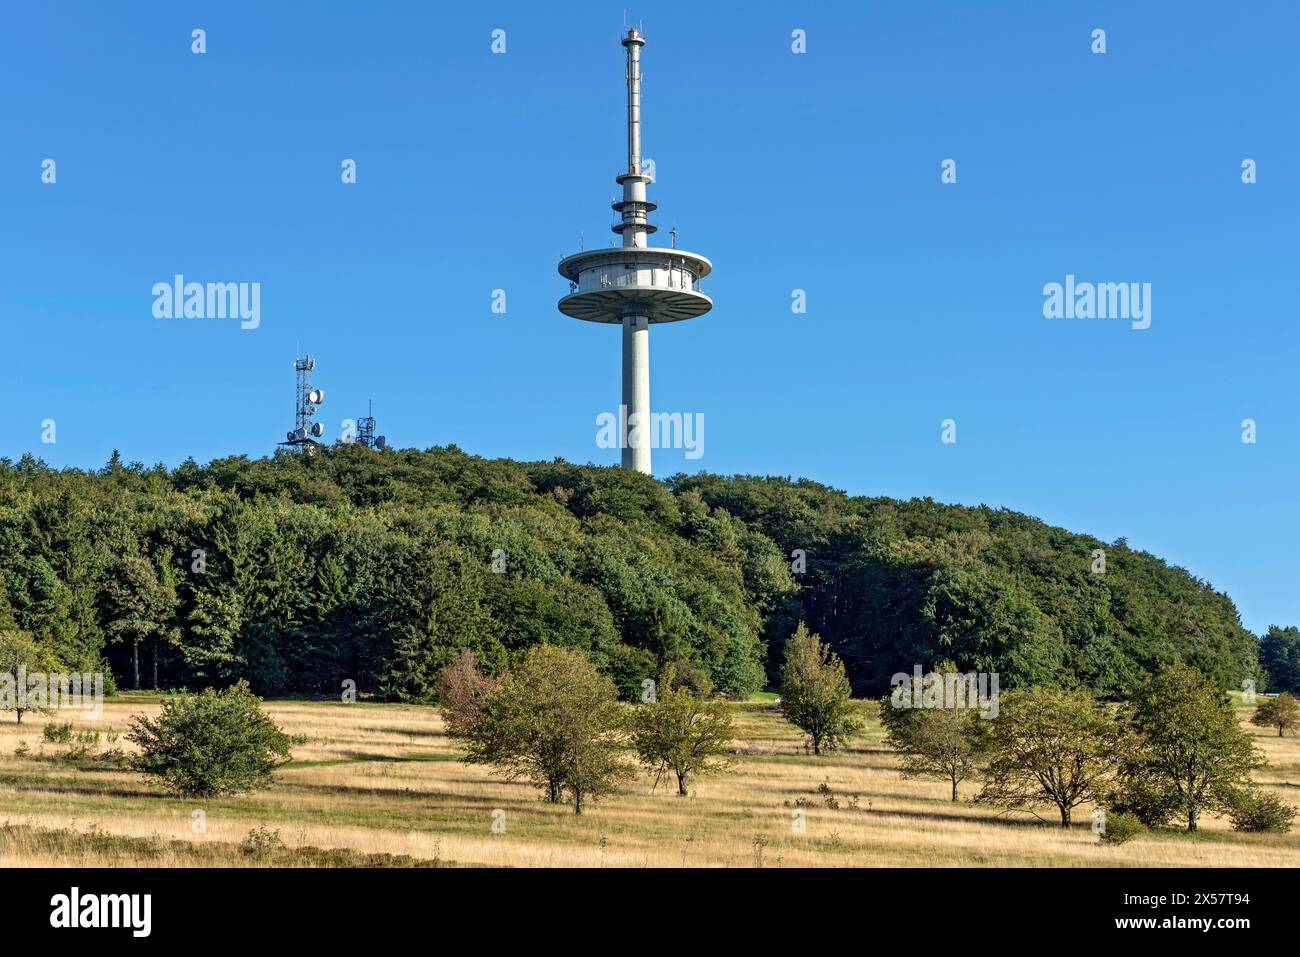 Telekom Telecom tower, torre di trasmissione, foresta, prati secchi, cima Hoherodskopf, destinazione dell'escursione, Schotten, Vogelsberg Foto Stock